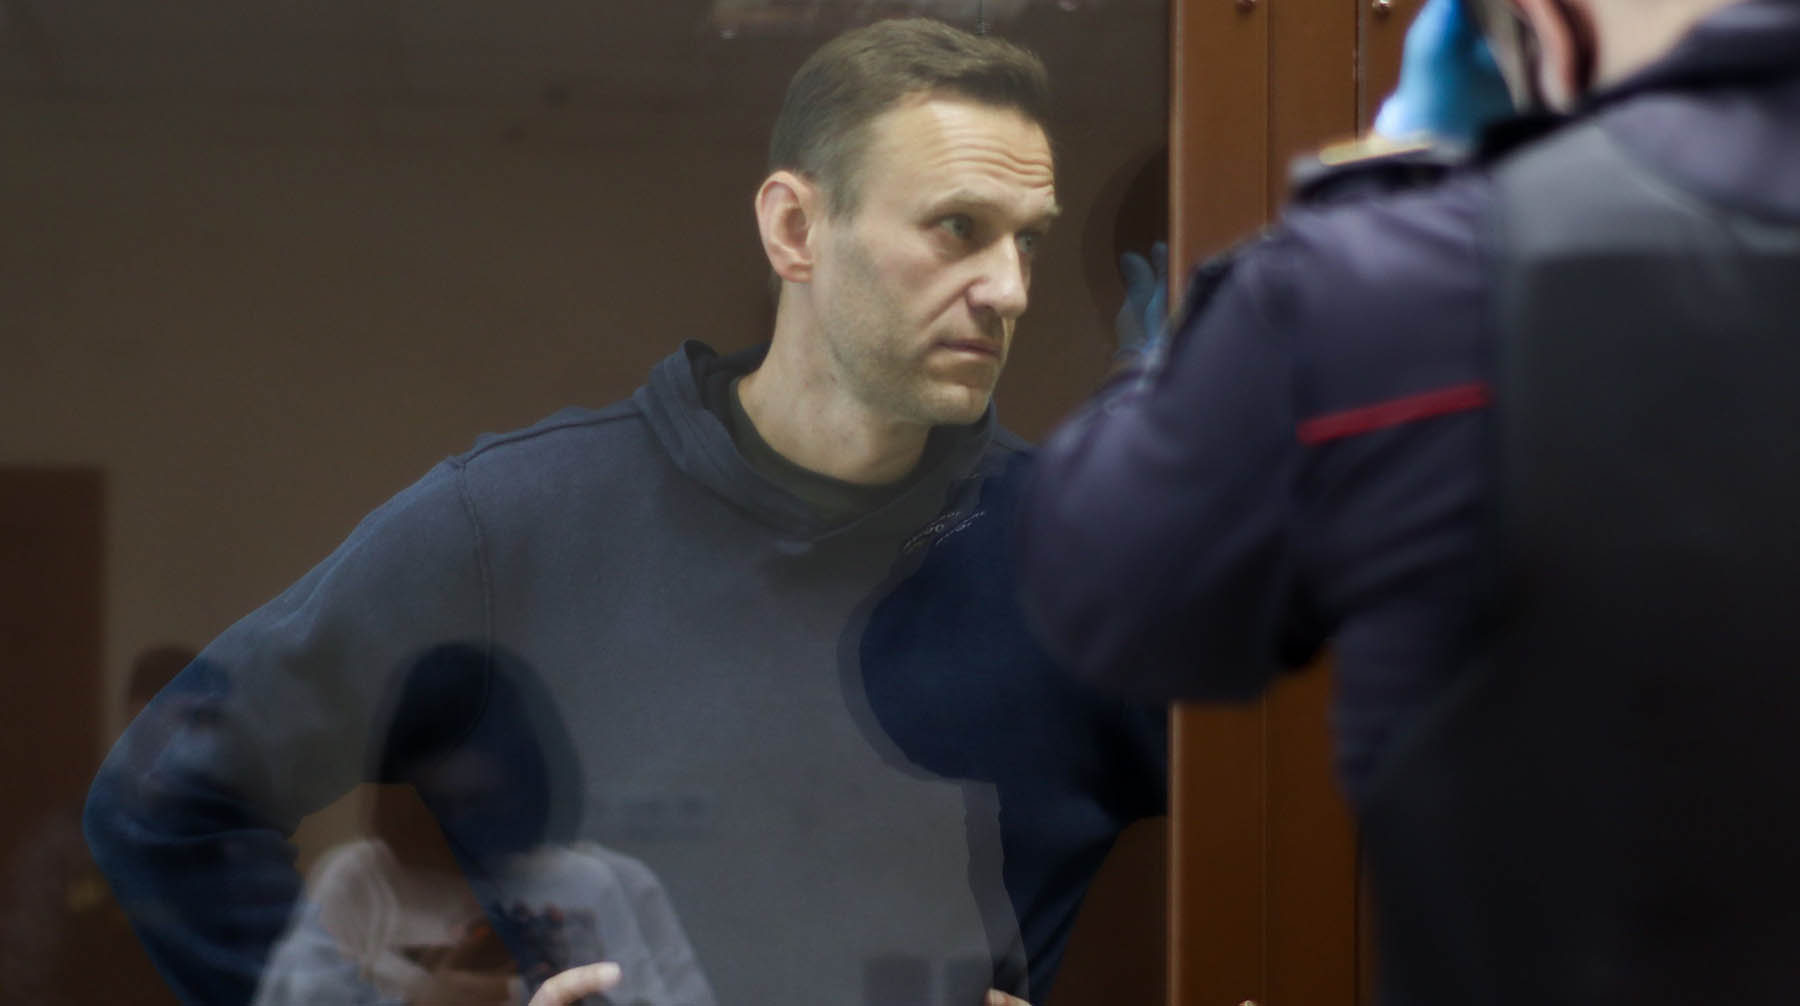 Адвокат политика Ольга Михайлова сообщила, что его могли увезти сегодня или 24 февраля Фото: © АГН Москва